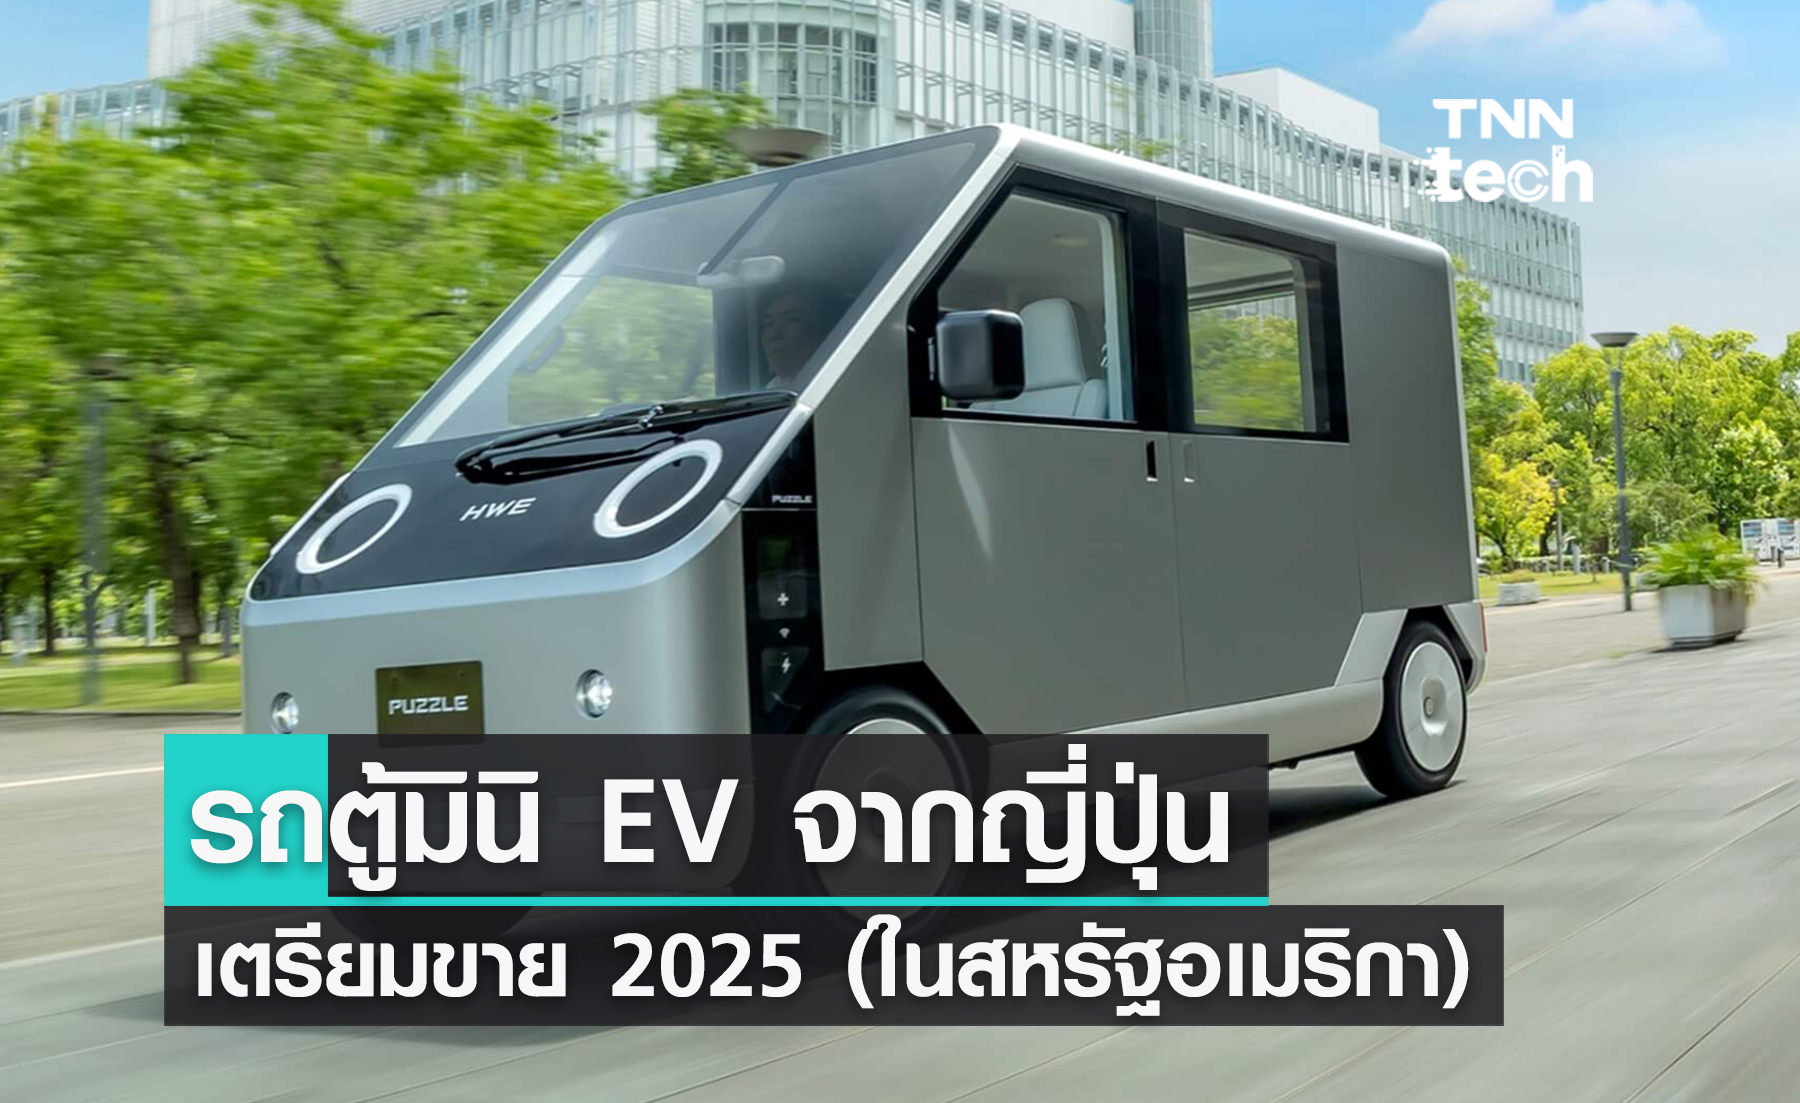 มาแล้ว ! รถตู้ EV ไซส์เล็กจาก ญี่ปุ่น เตรียมขาย 2025 นี้ (ในสหรัฐอเมริกา)